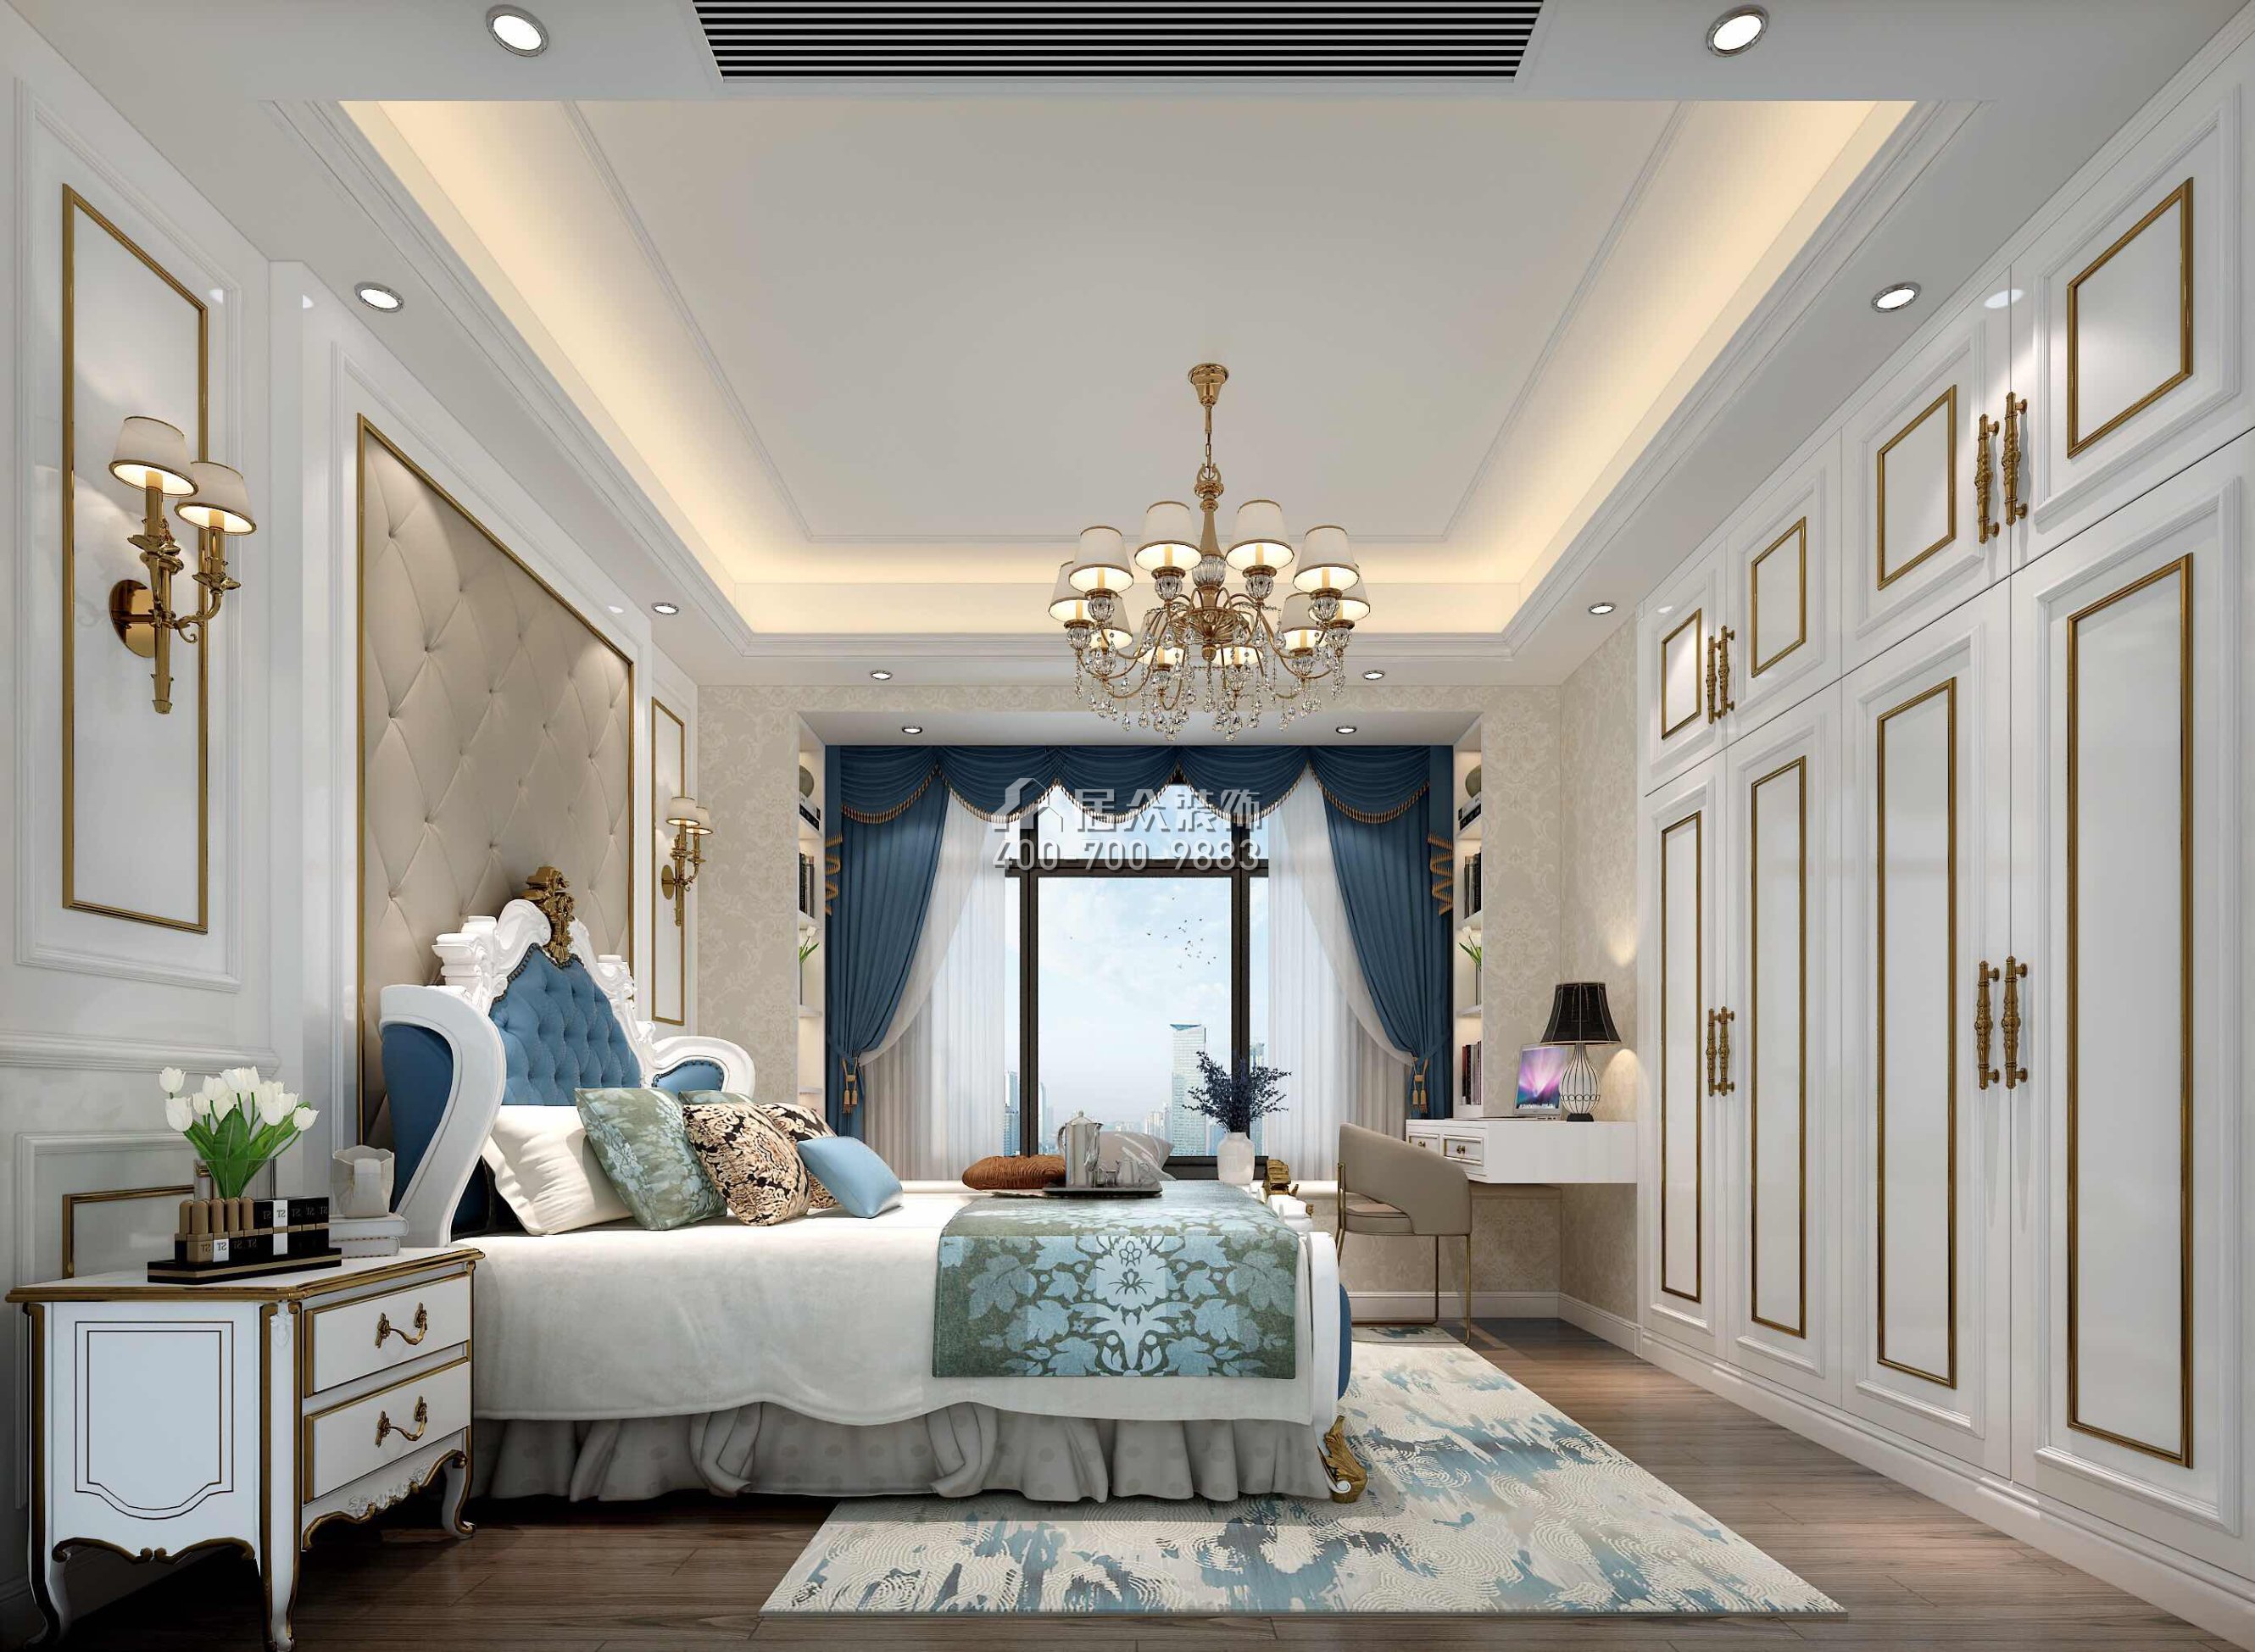 水岸花山130平方米欧式风格平层户型卧室装修效果图